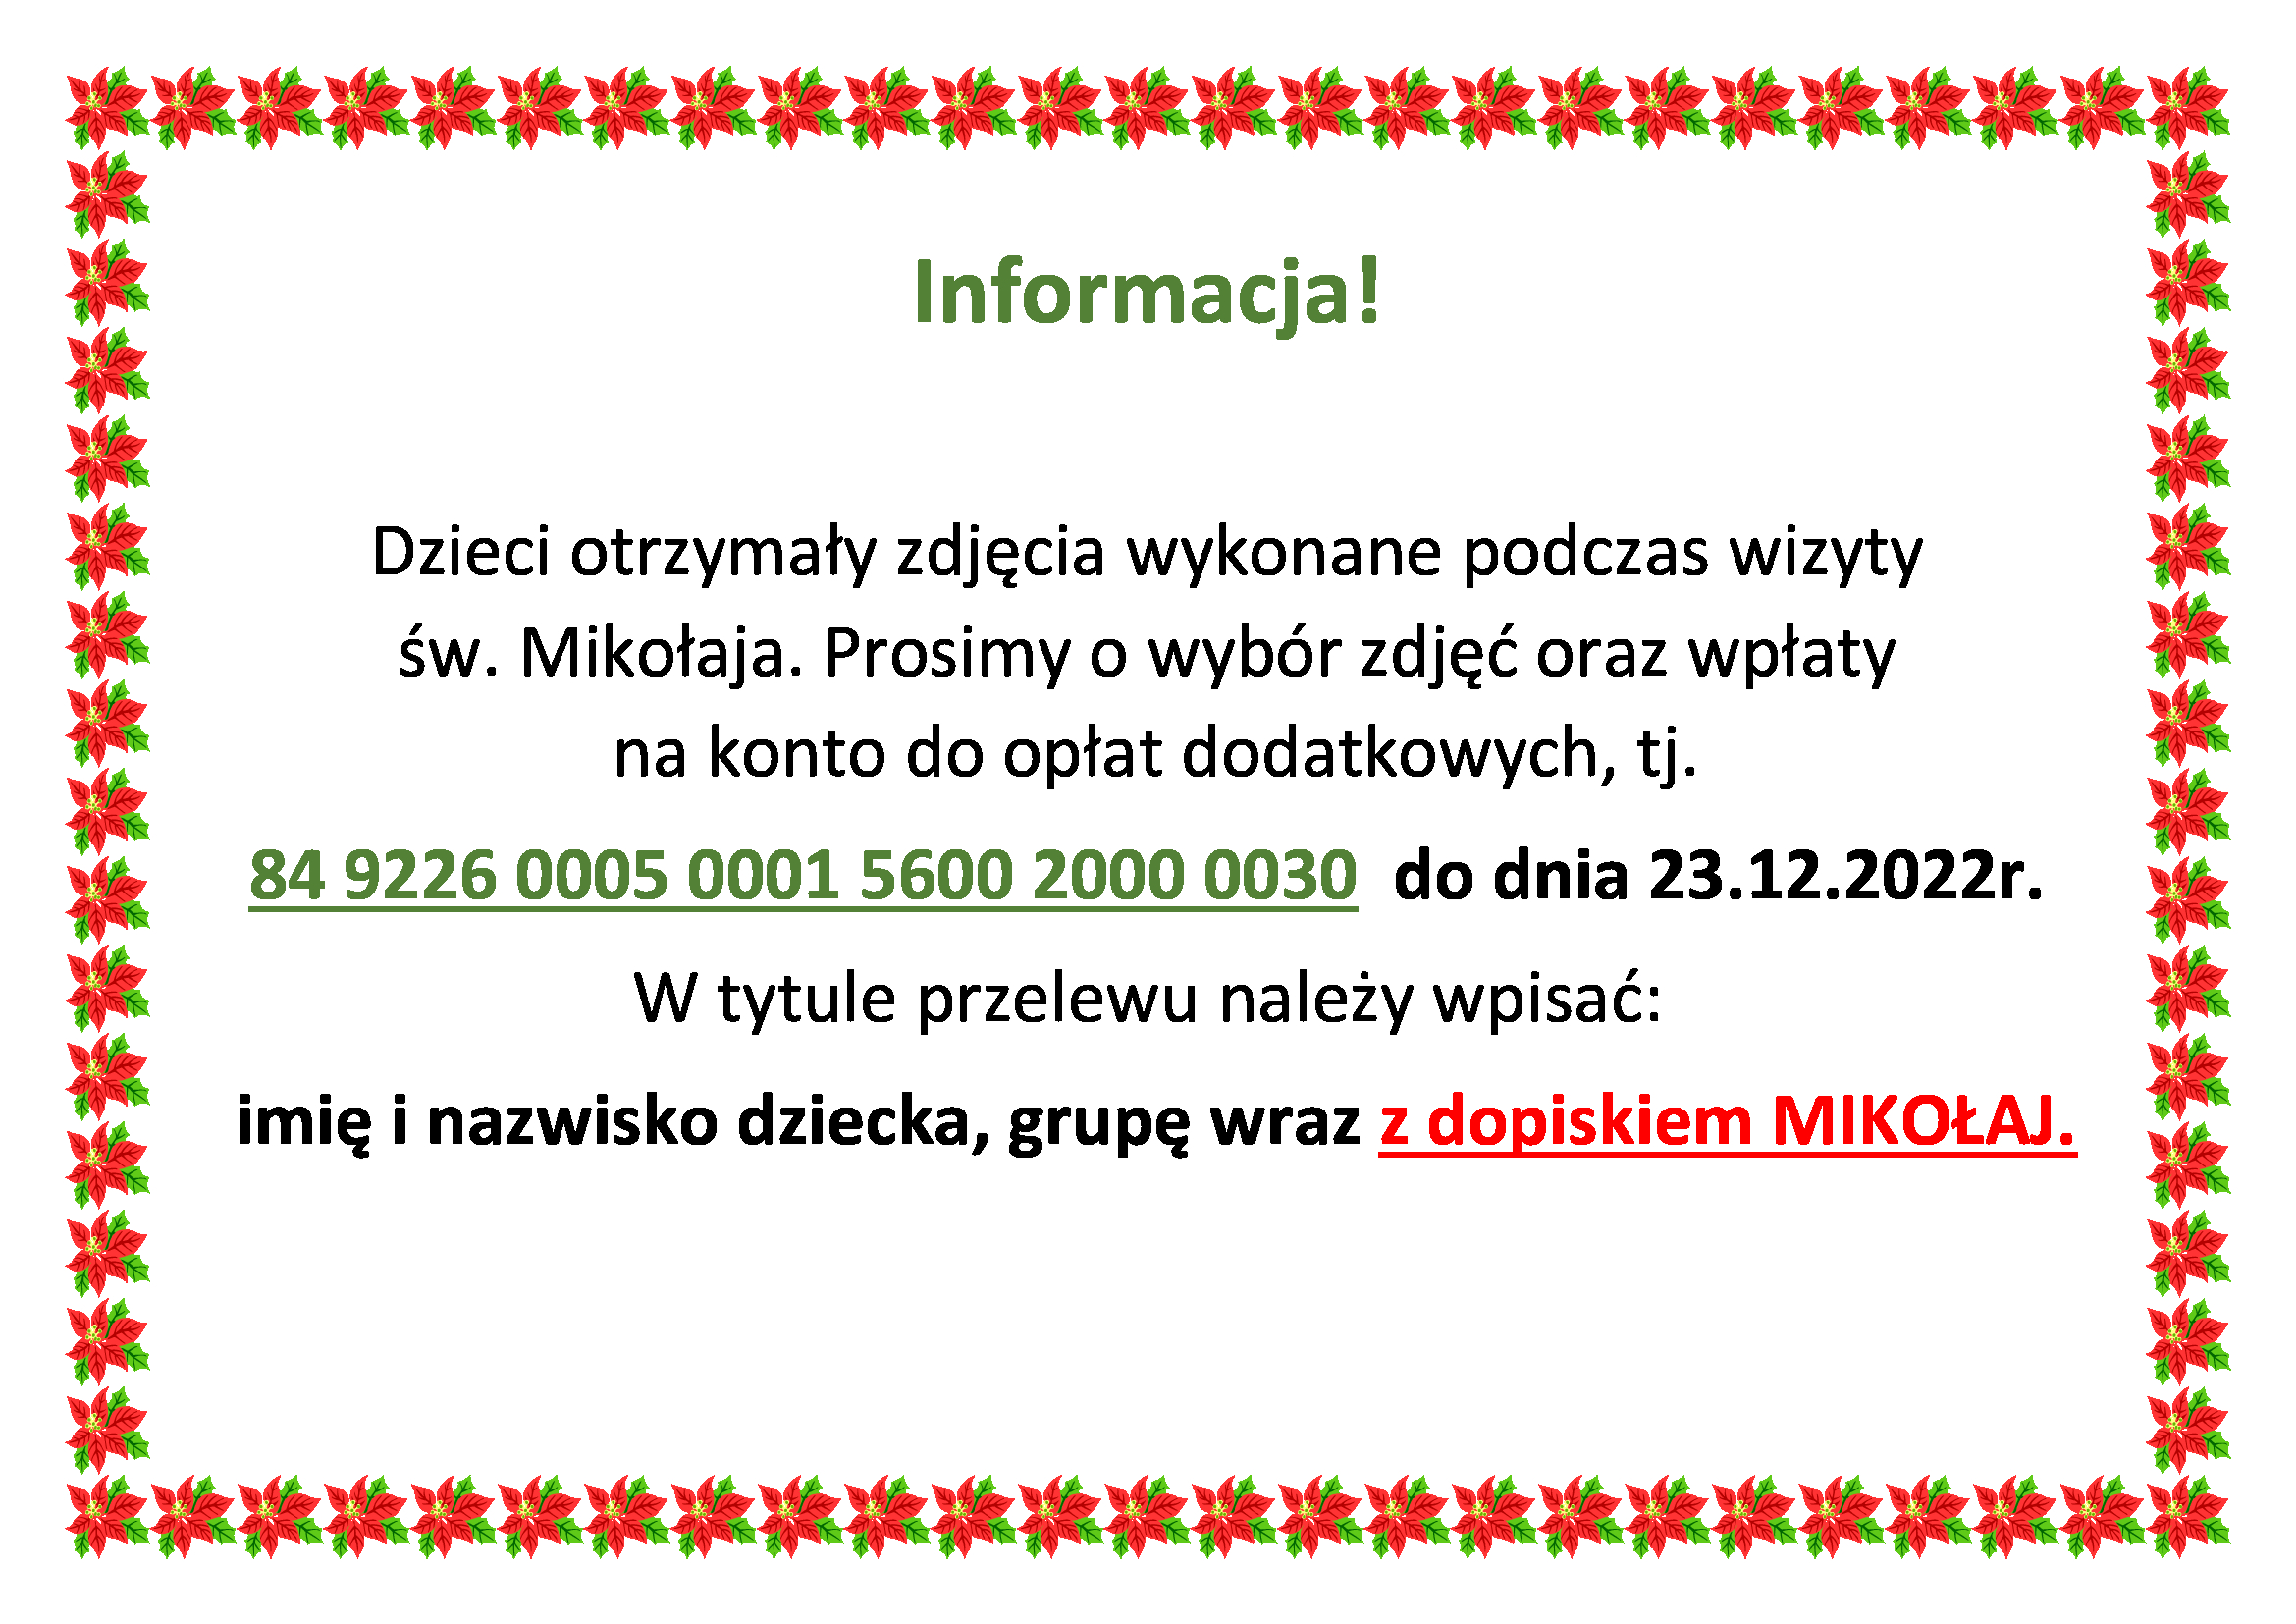 Informacja o zdjęciach ze Św. Mikołajem